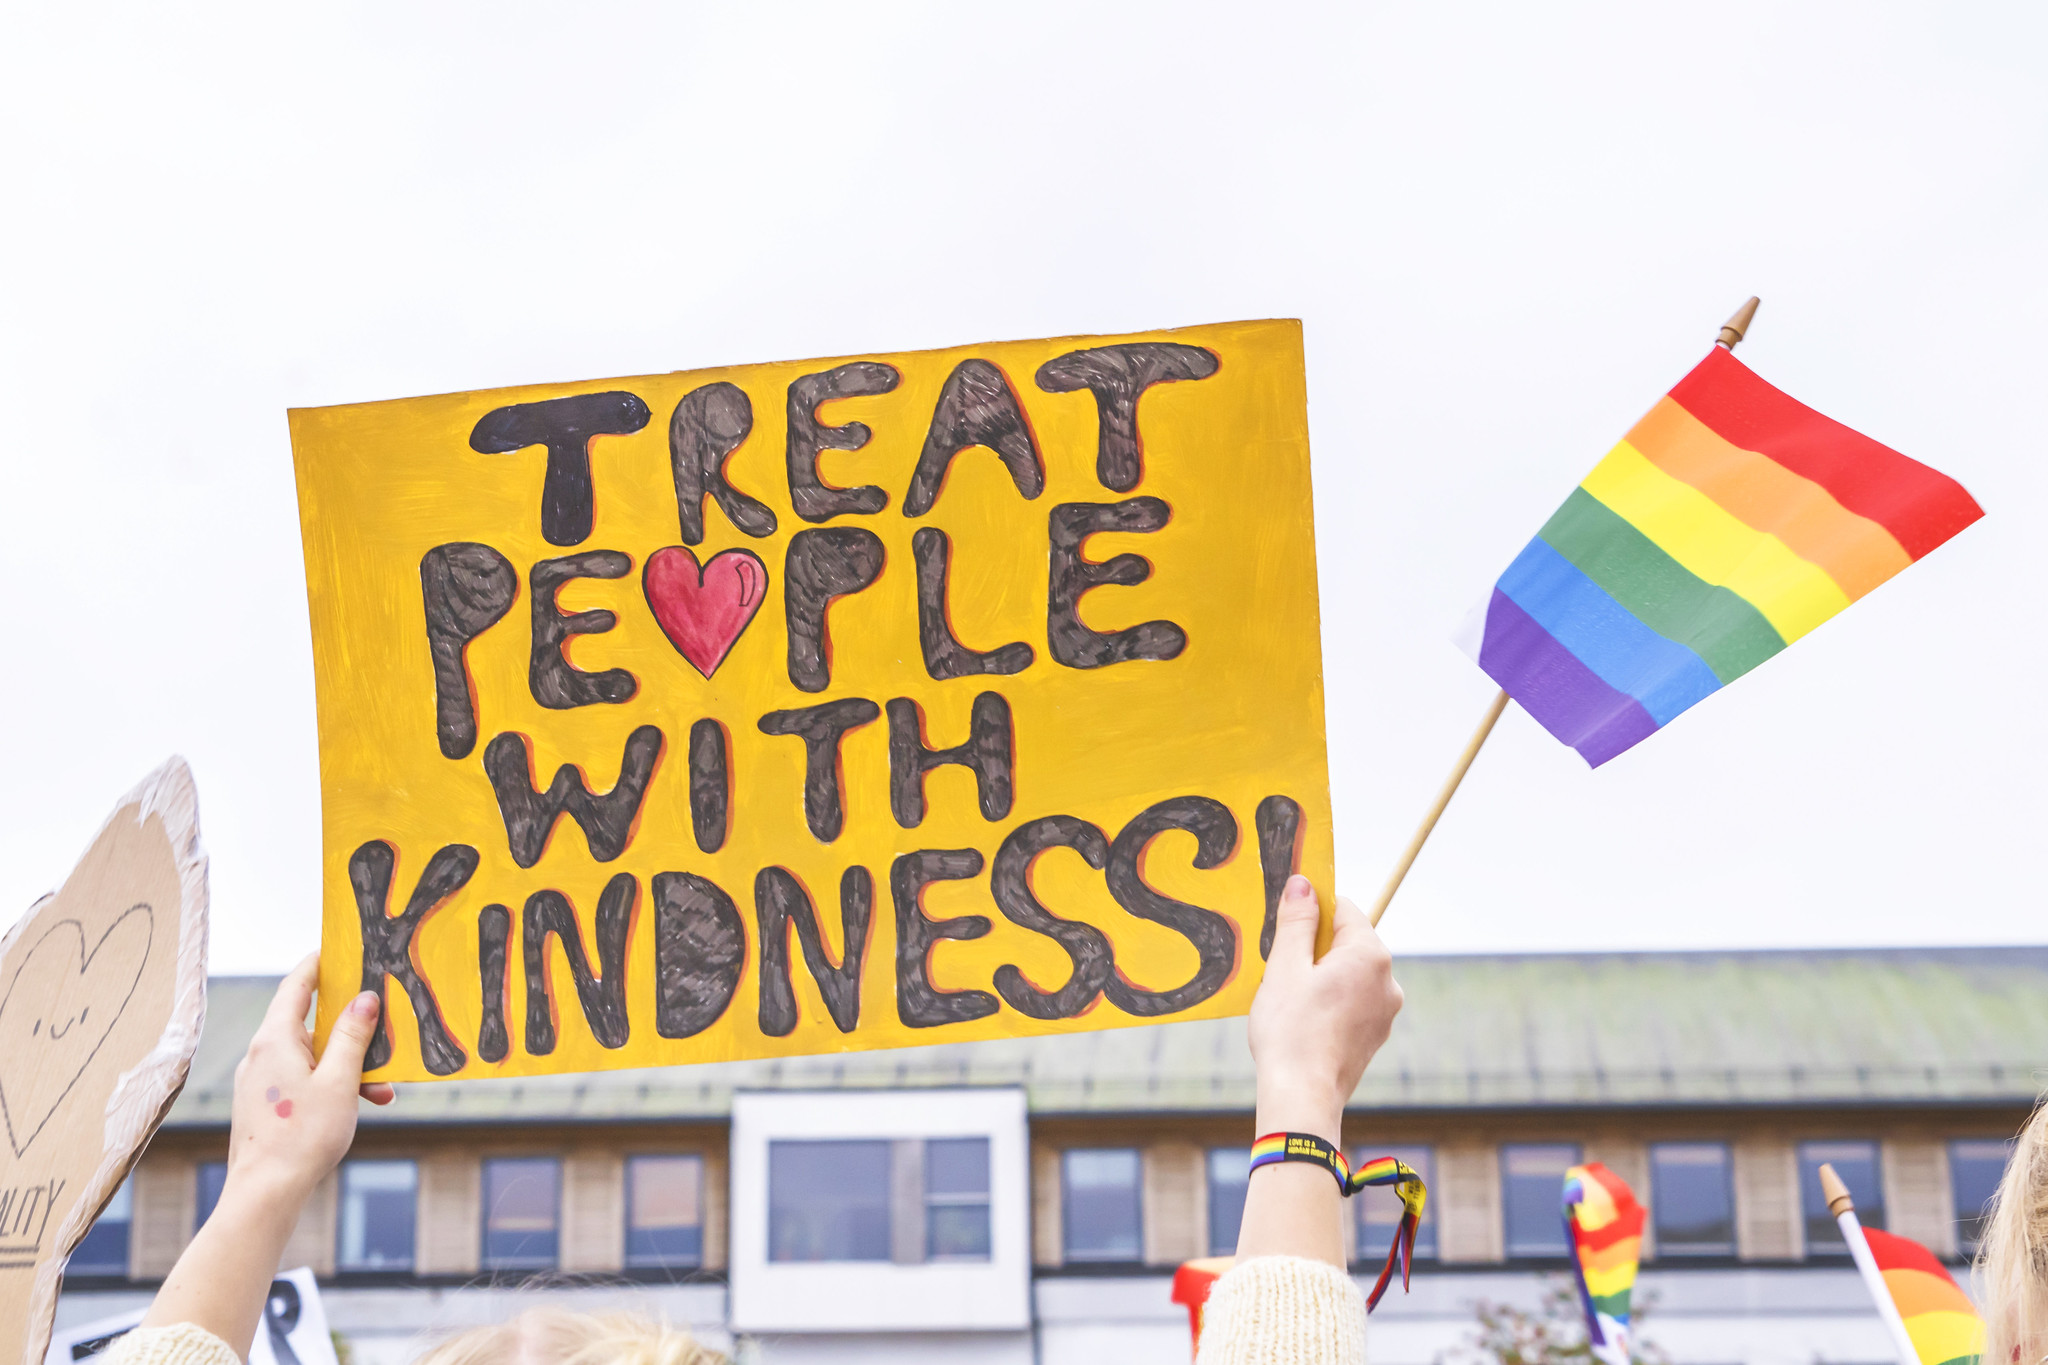 Plakat med "Treat people with kindsness" på